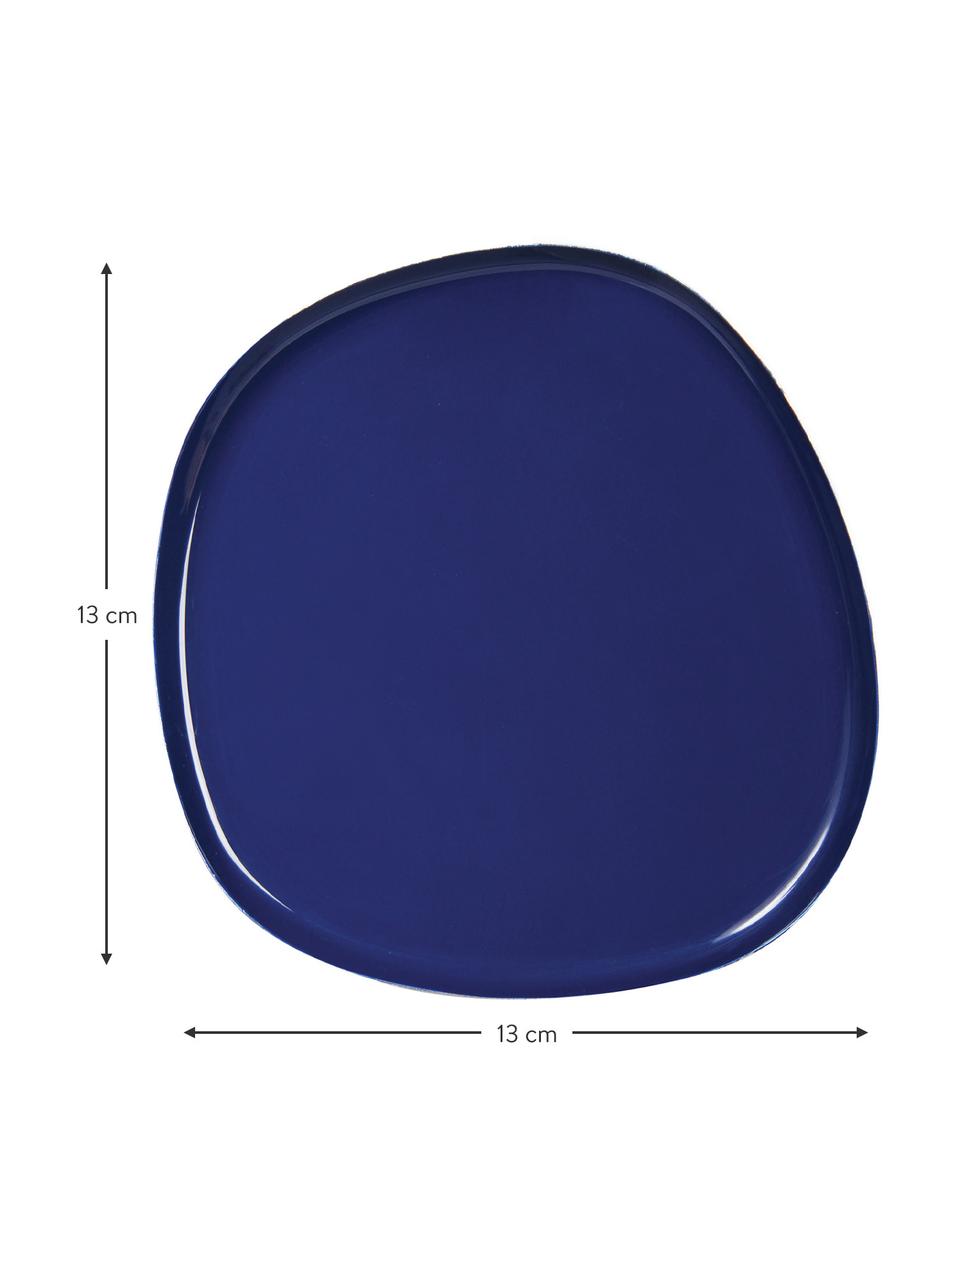 Vassoio decorativo piccolo in metallo Imperfect, Metallo rivestito, Blu scuro, Larg. 13 x Prof. 13 cm